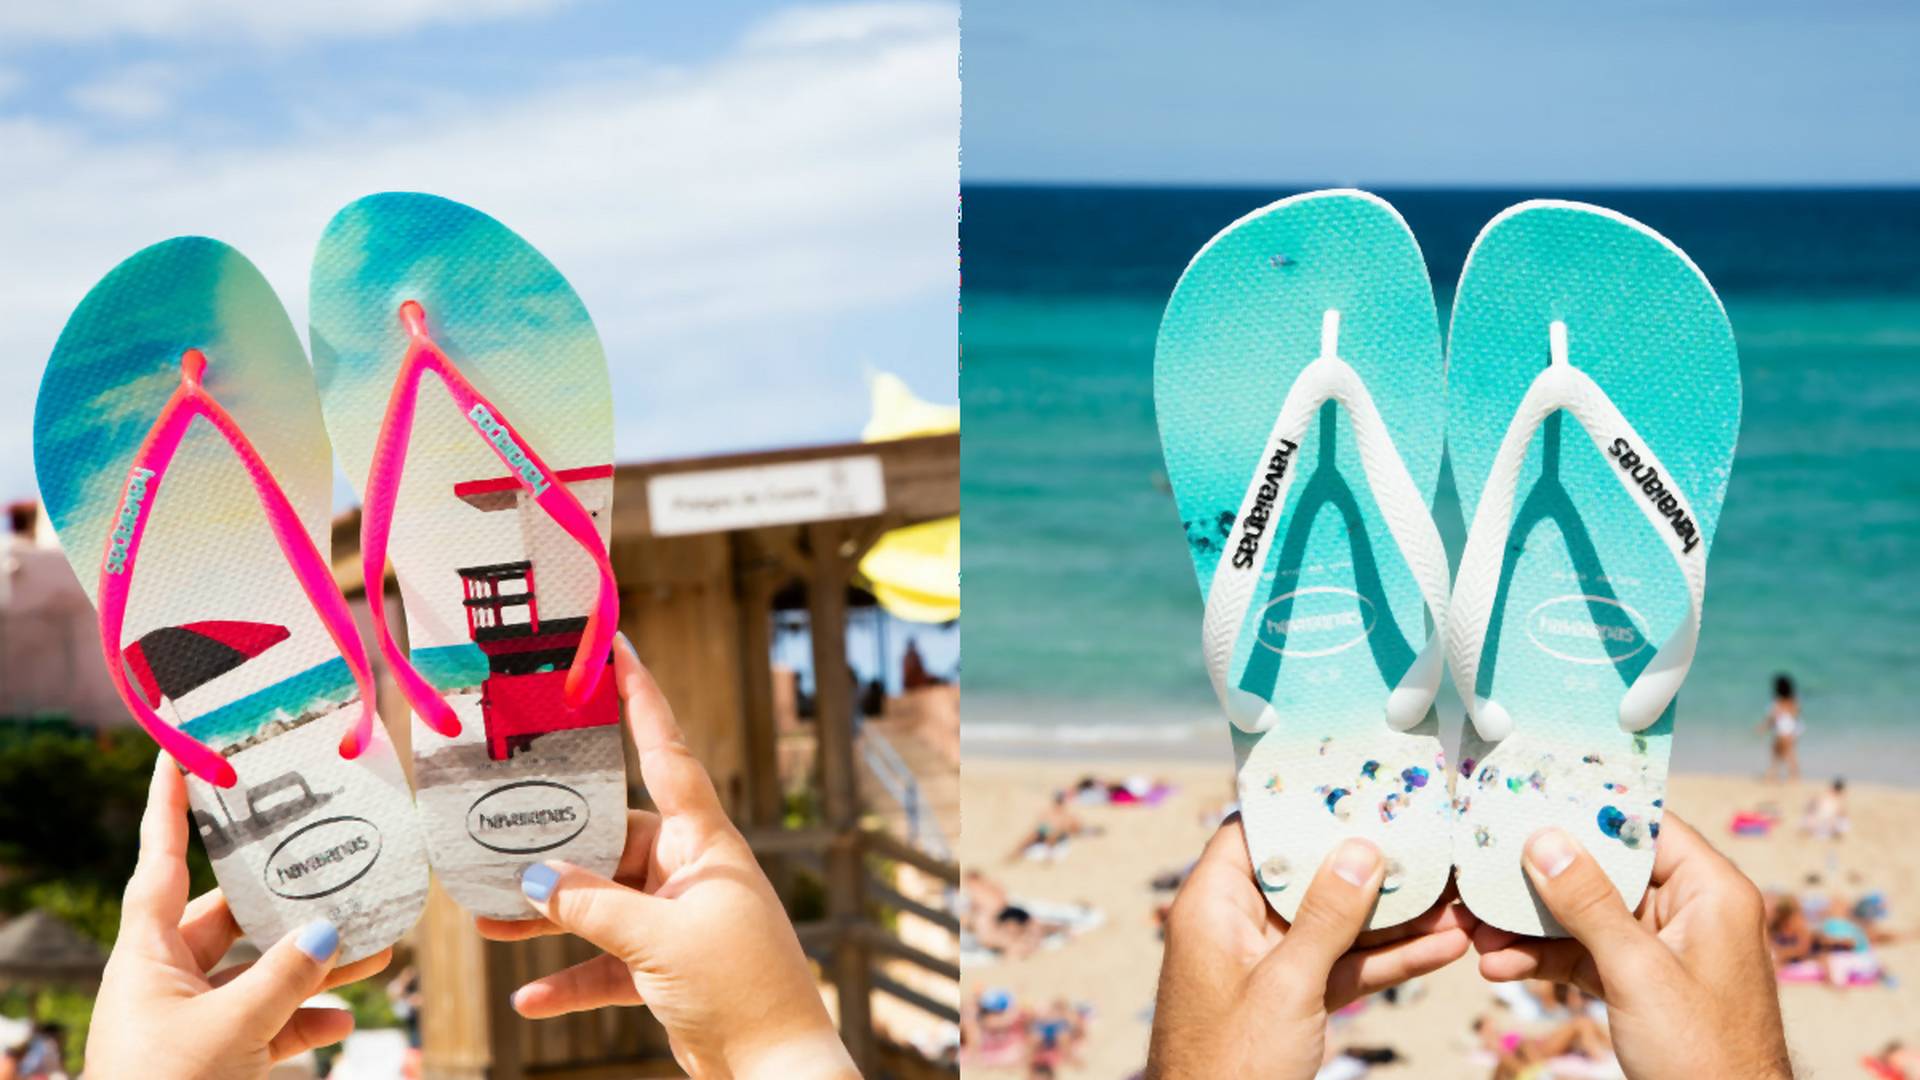 Japonki, klapki, sandały - wybieramy idealne buty na plażę